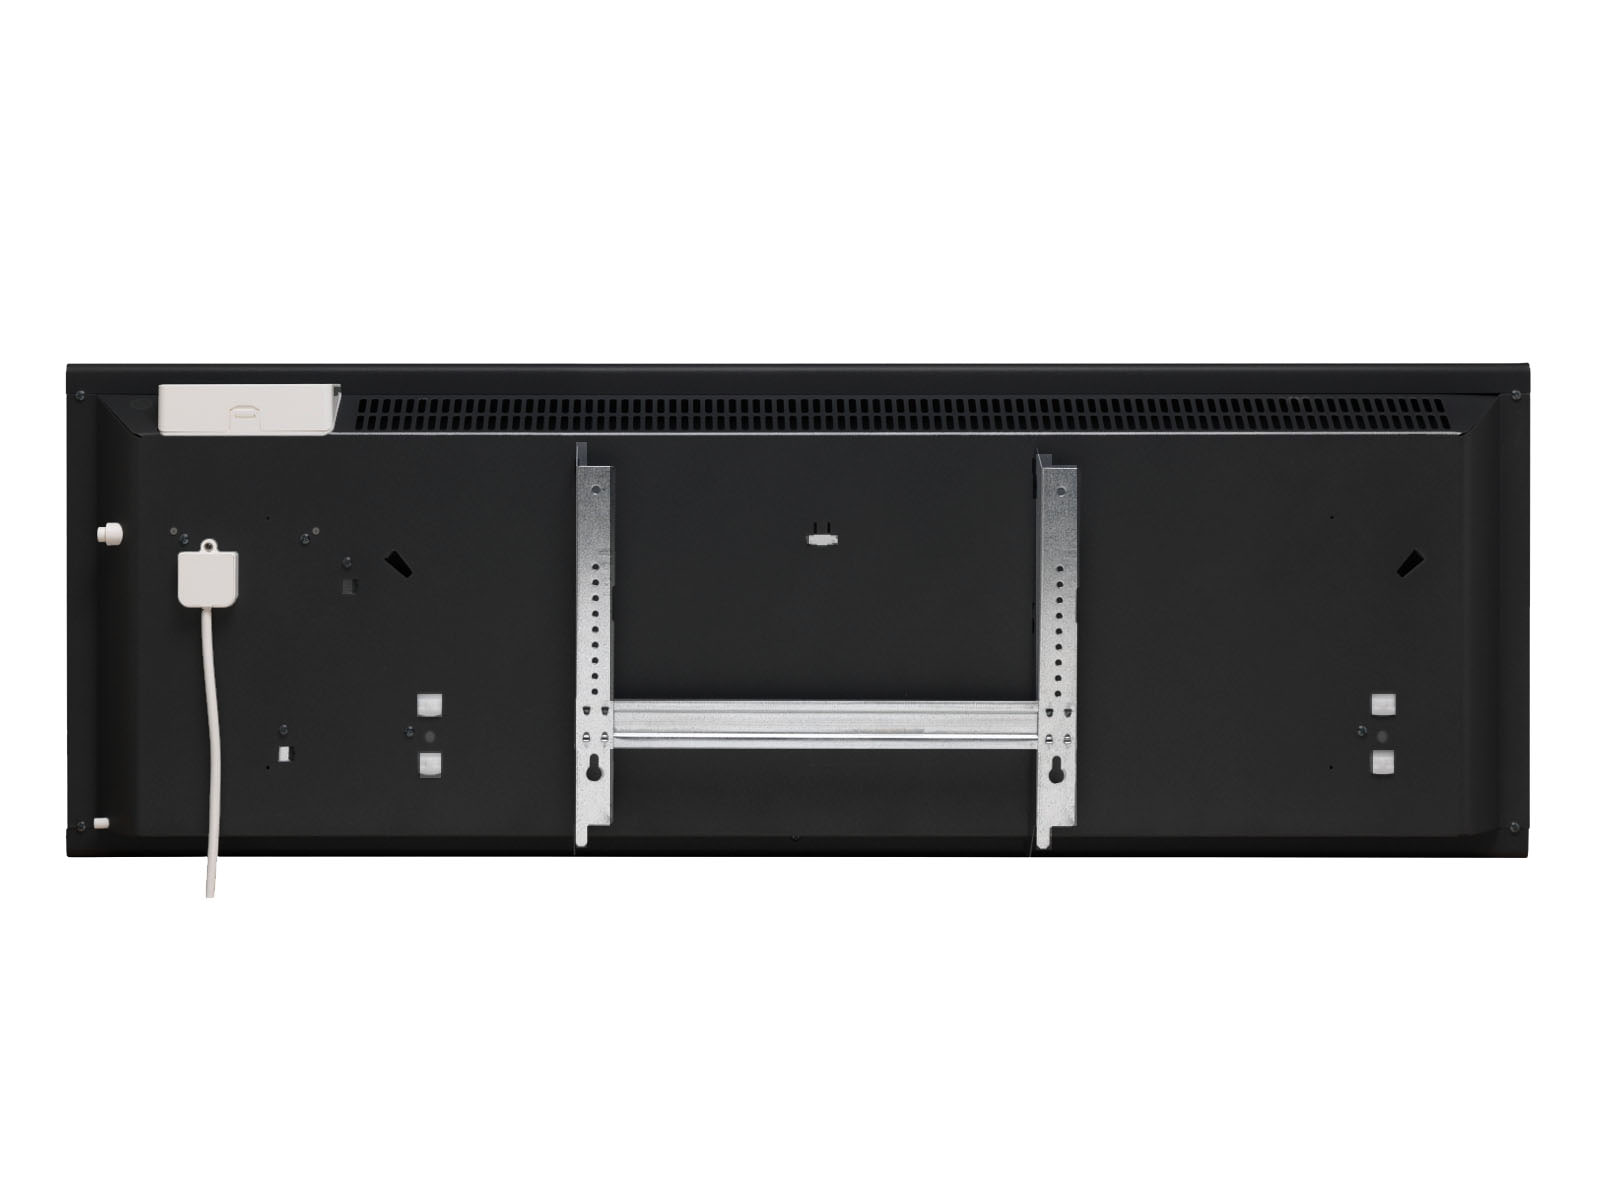 Adax Neo wifi, L02, 21cm laag zwart -250 watt